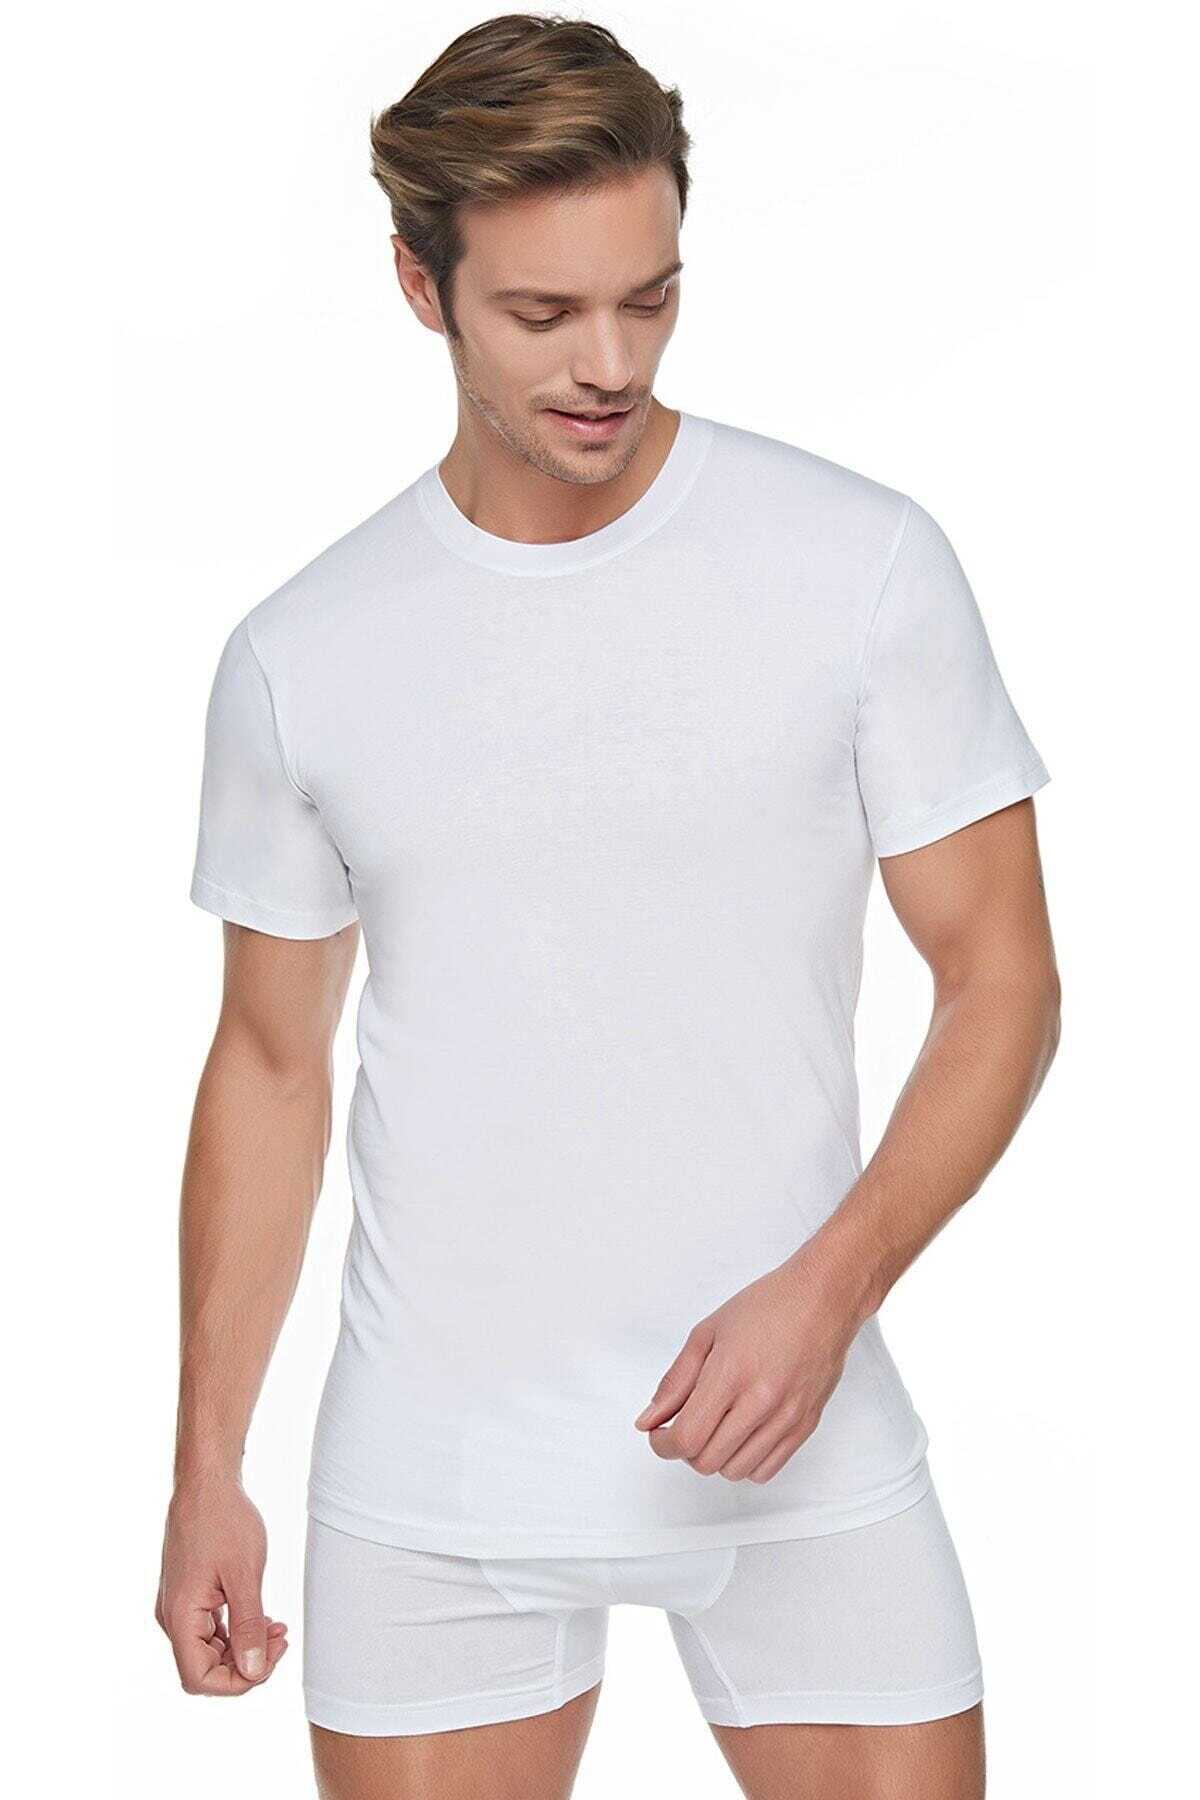 زیر پیراهن یقه گرد آستین کوتاه مردانه سفید برند Seher 